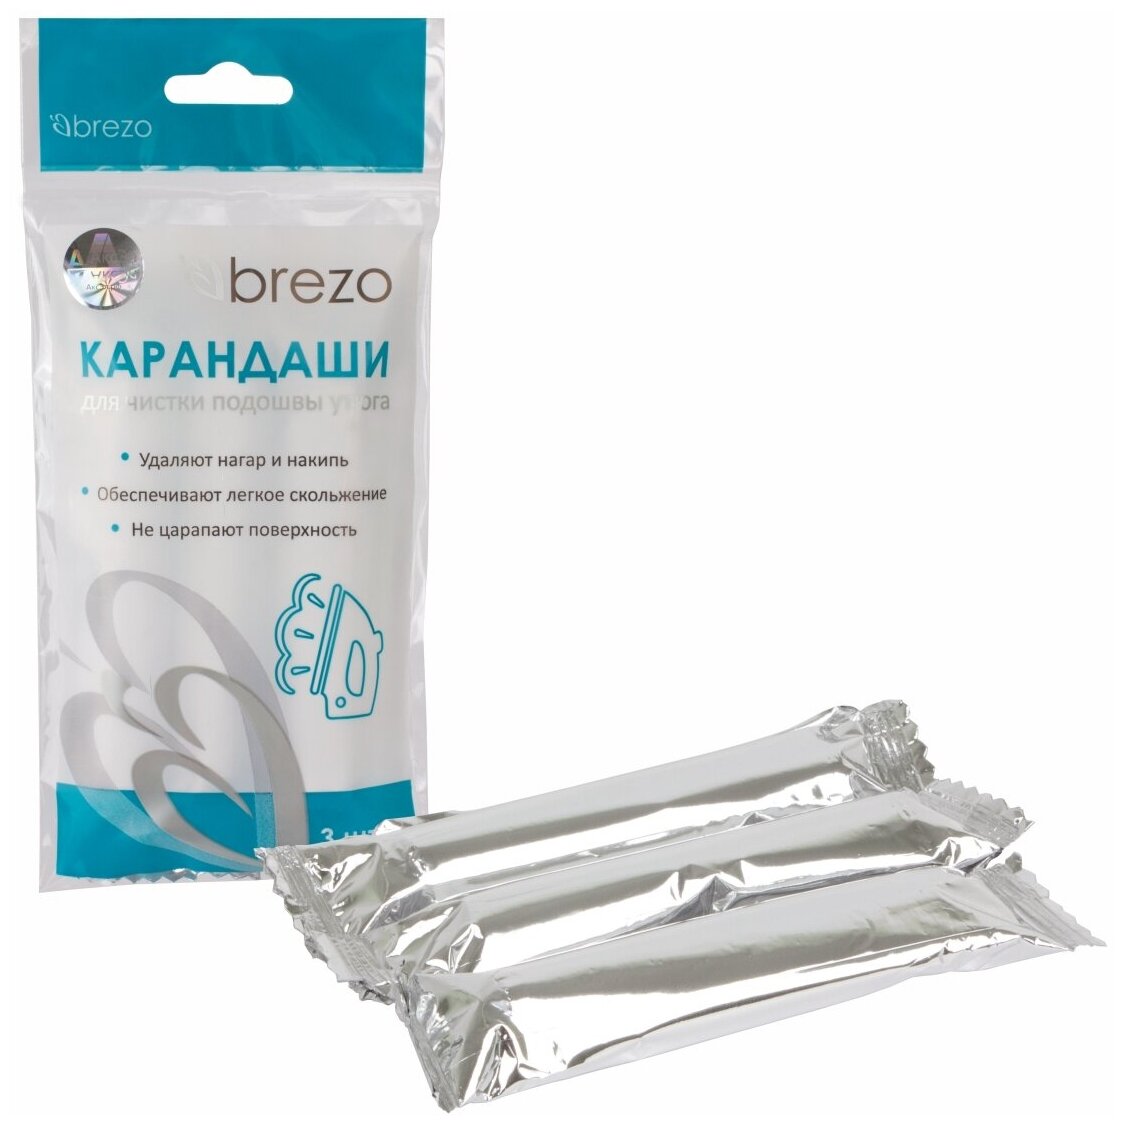 Набор карандашей Brezo для чистки подошвы утюга, 3 шт. по 25 г